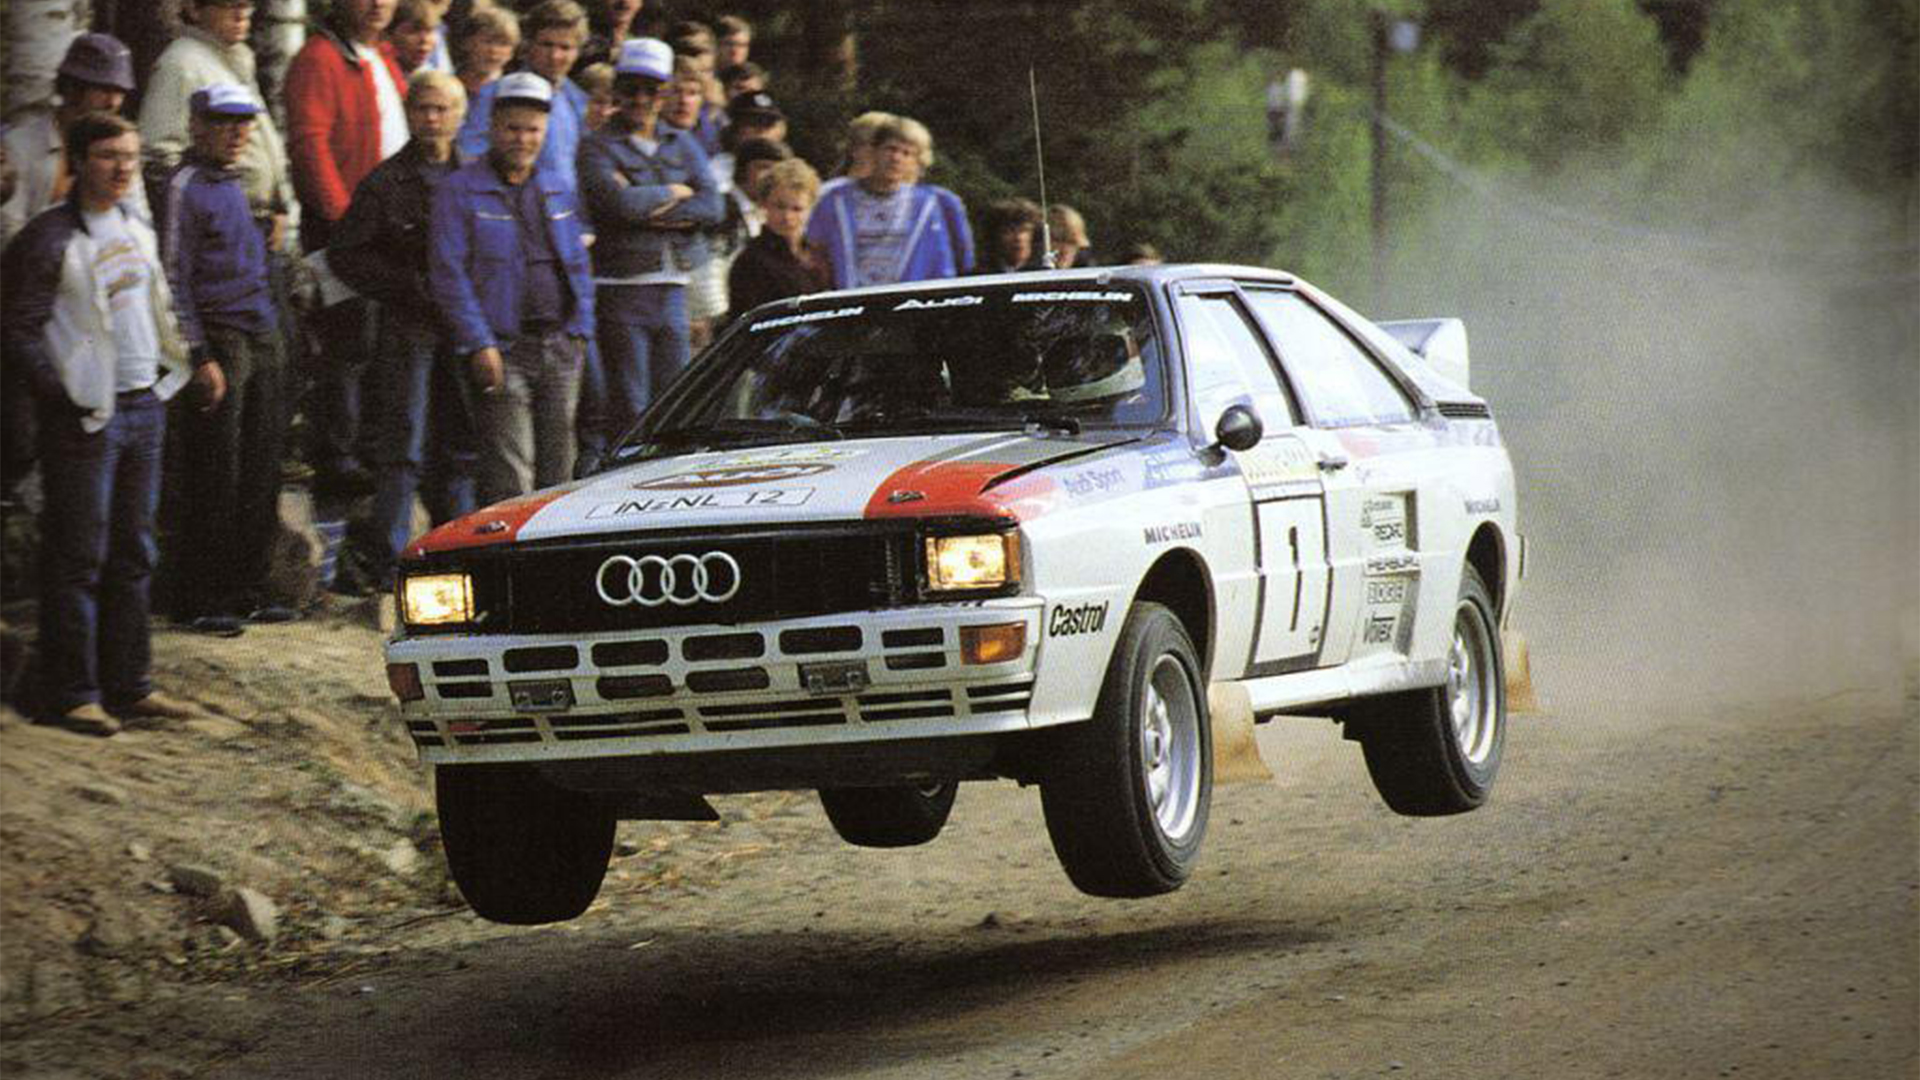 Audi había llegado a finales de 1981 y ya en 1982 mostró que tenía un potencial inevitable para todos los rivales de tracción simple. Y así fue, al ganar los títulos de 1983 y 1984